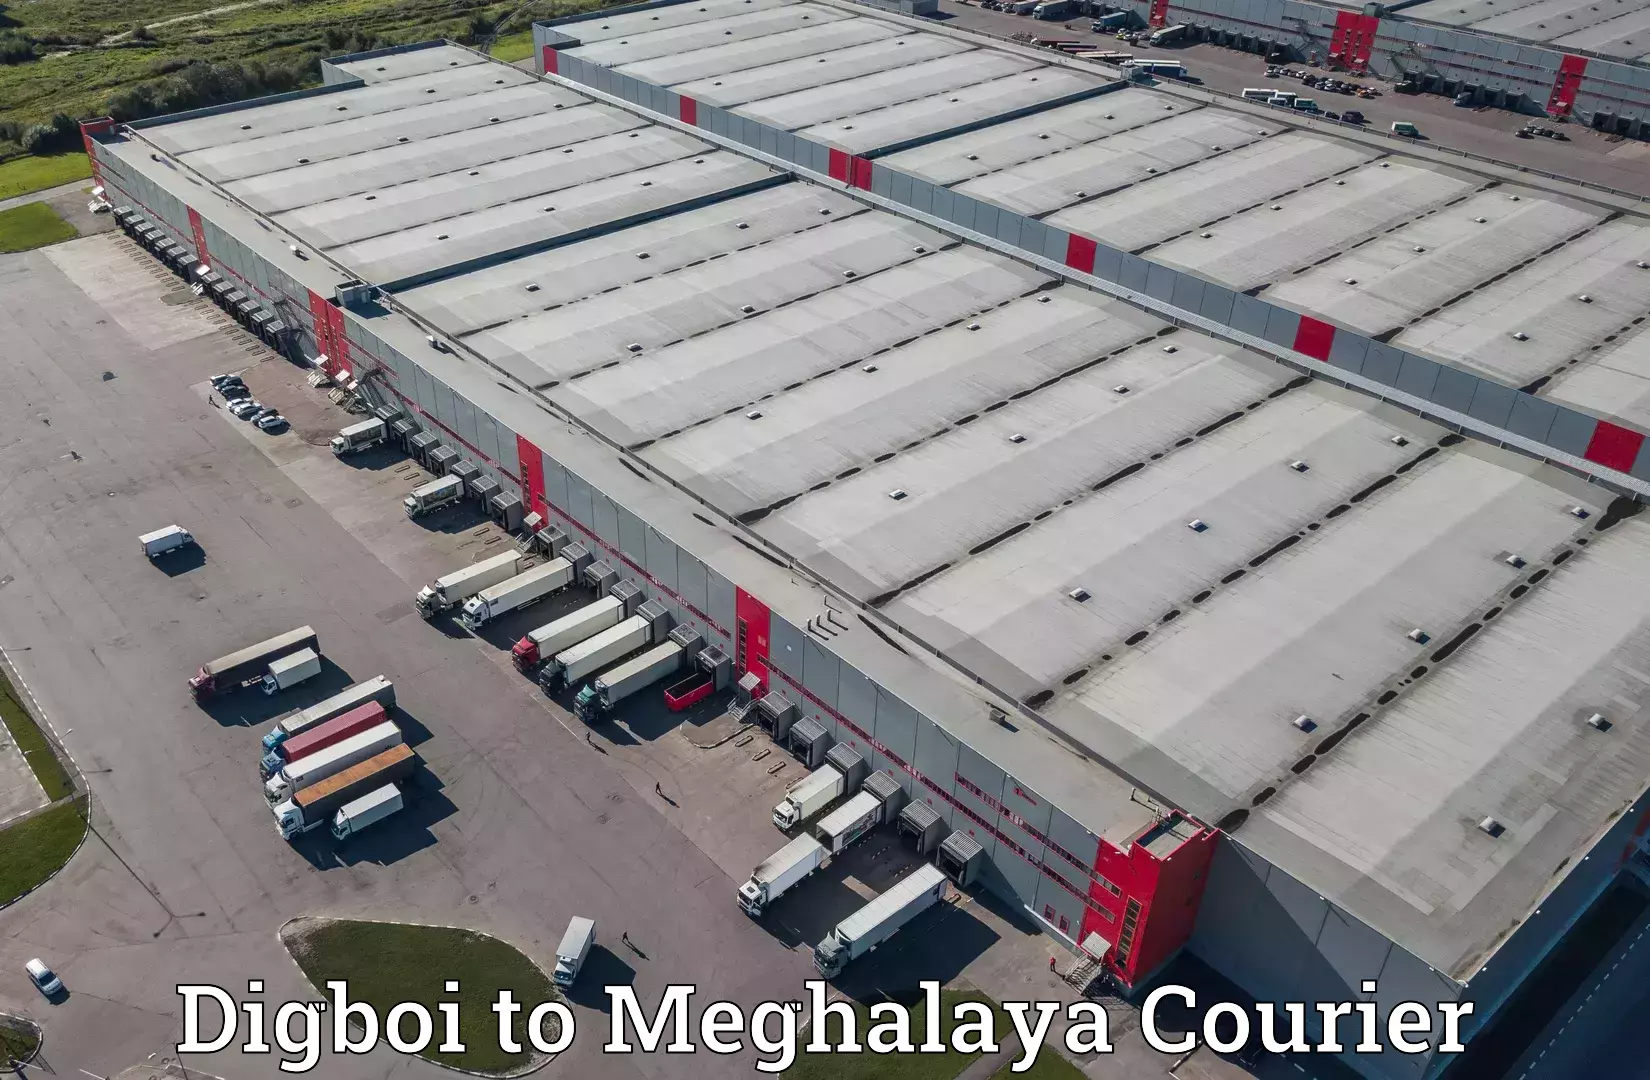 Express courier facilities Digboi to Meghalaya